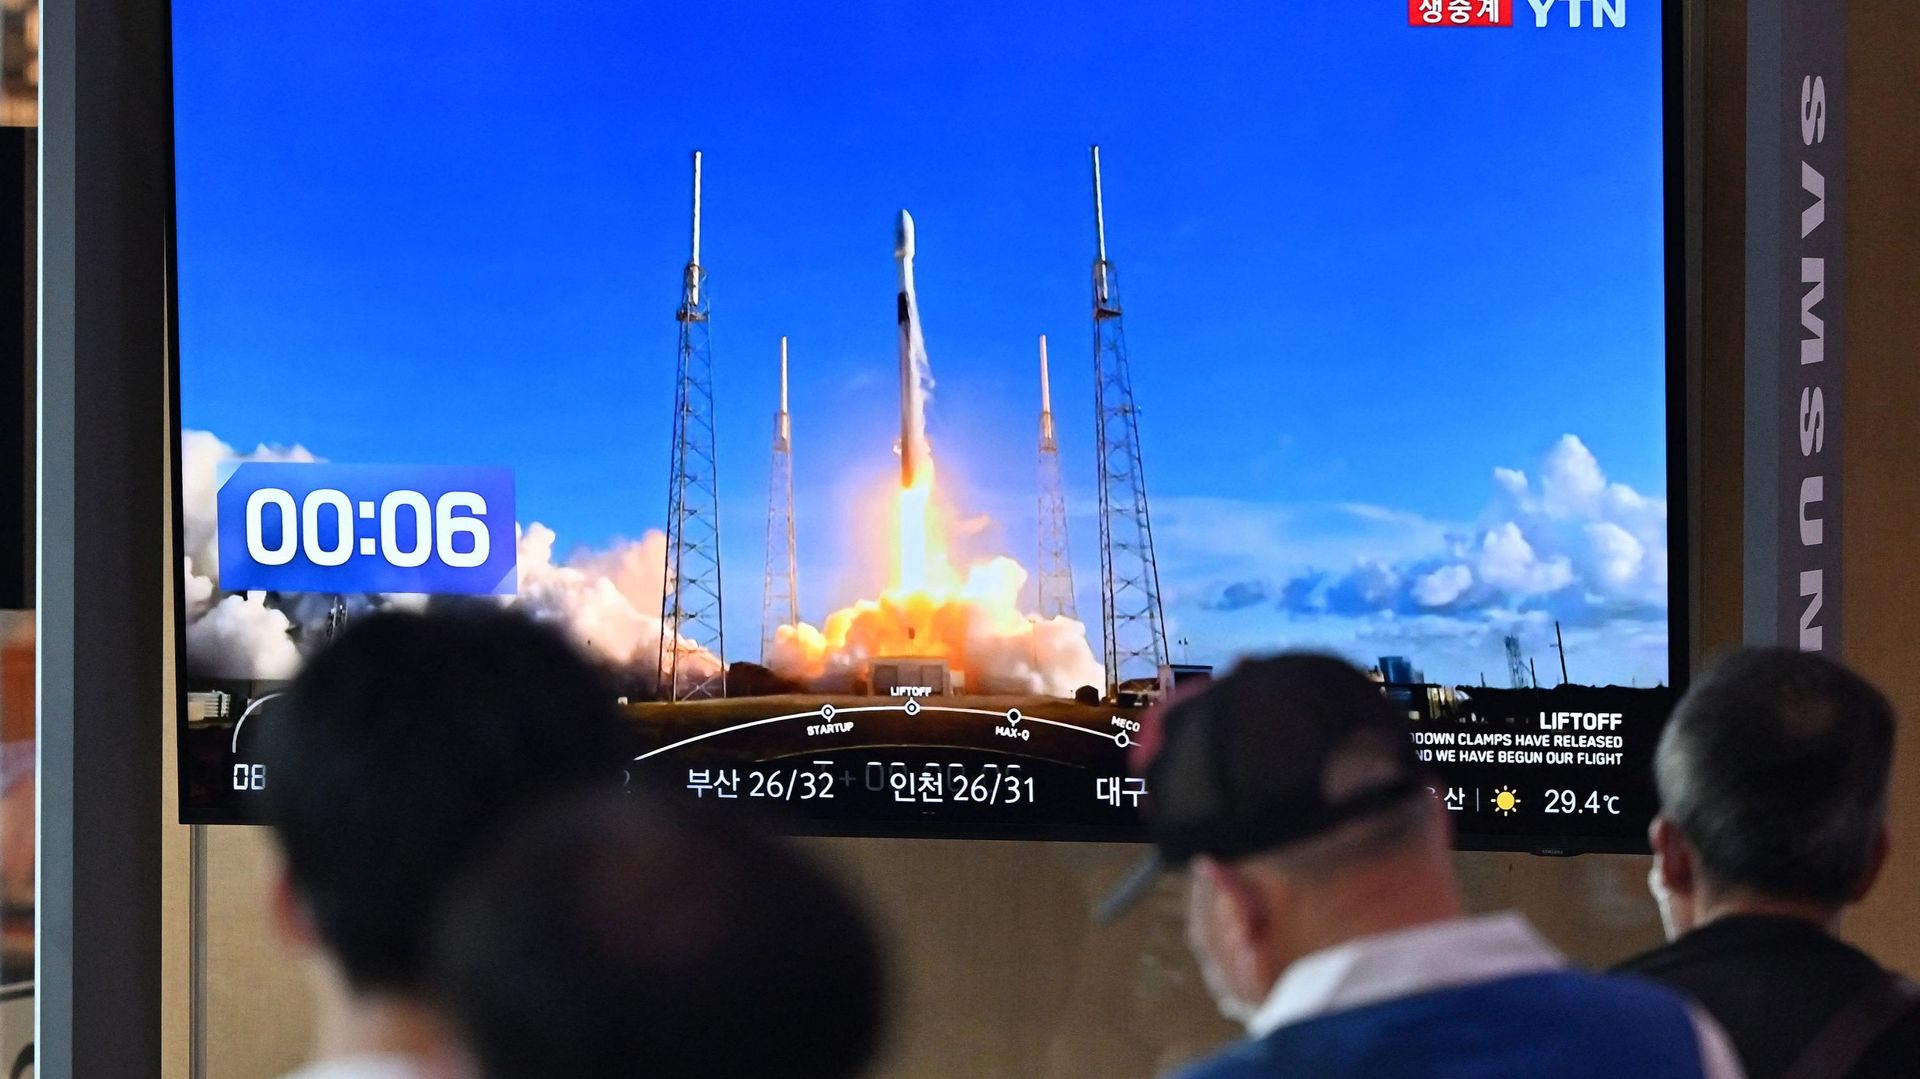 Des personnes regardent un écran de télévision montrant des images en direct du lancement d'une fusée Falcon 9 de SpaceX avec le premier orbiteur lunaire sud-coréen Danuri à bord depuis Cap Canaveral en Floride, dans une gare de Séoul, le 5 août 2022.